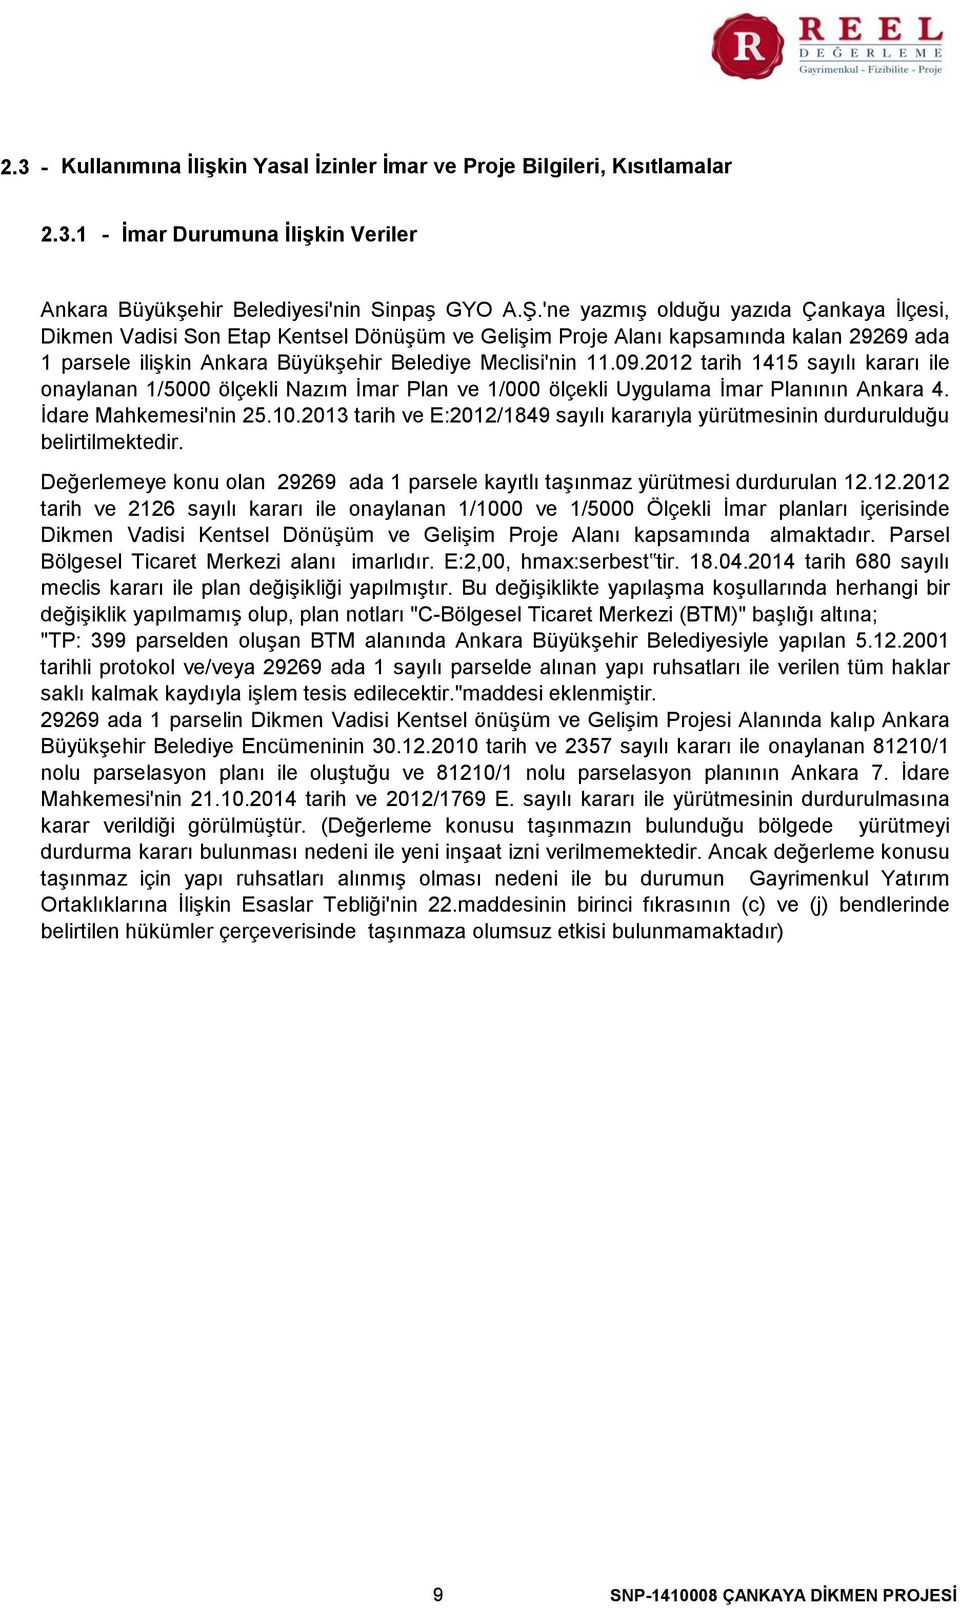 2012 tarih 1415 sayılı kararı ile onaylanan 1/5000 ölçekli Nazım İmar Plan ve 1/000 ölçekli Uygulama İmar Planının Ankara 4. İdare Mahkemesi'nin 25.10.